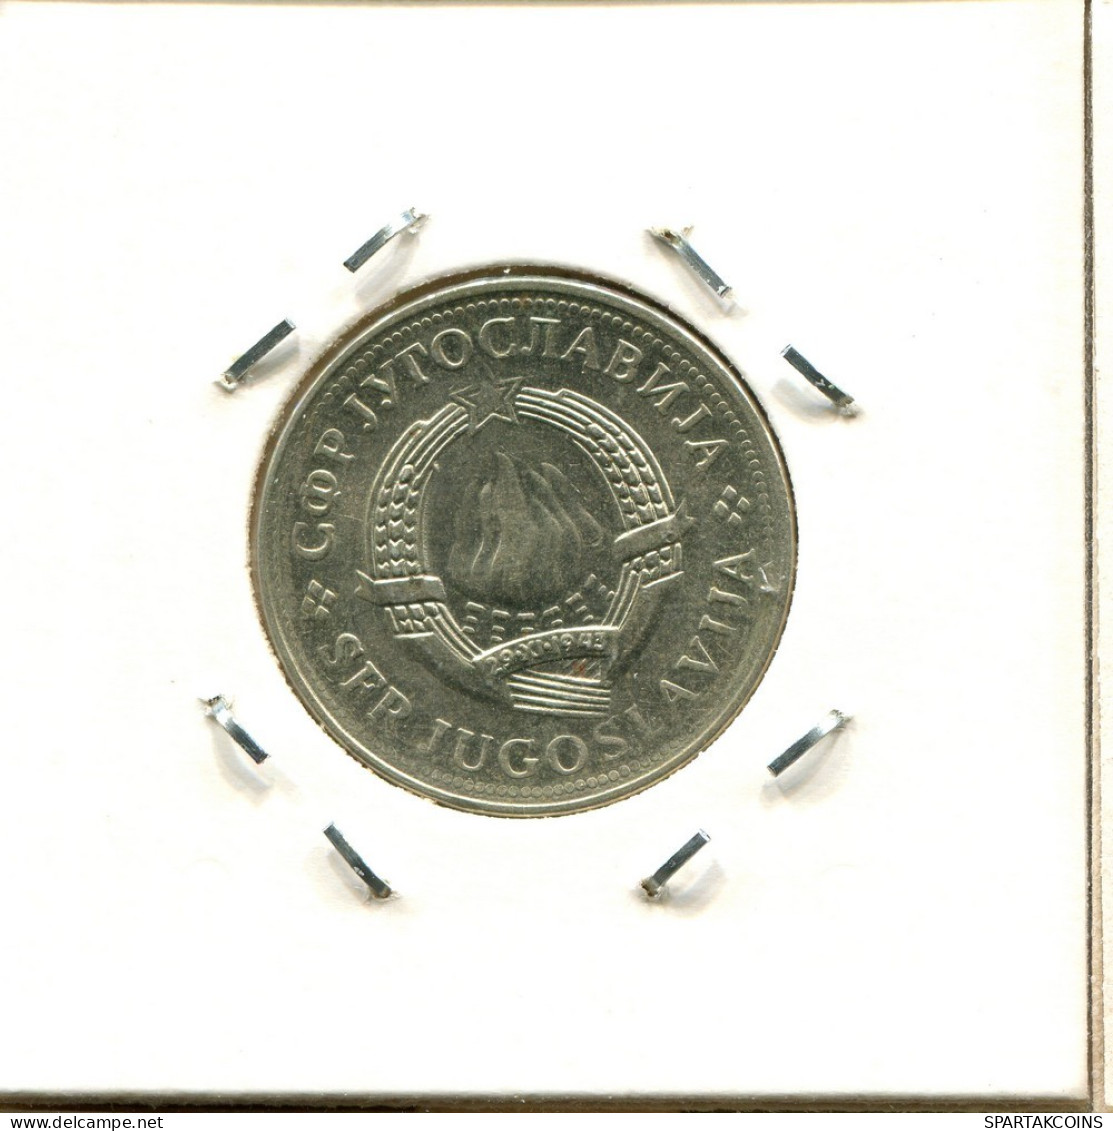 2 DINARA 1979 YUGOSLAVIA Coin #BA033.U.A - Yougoslavie